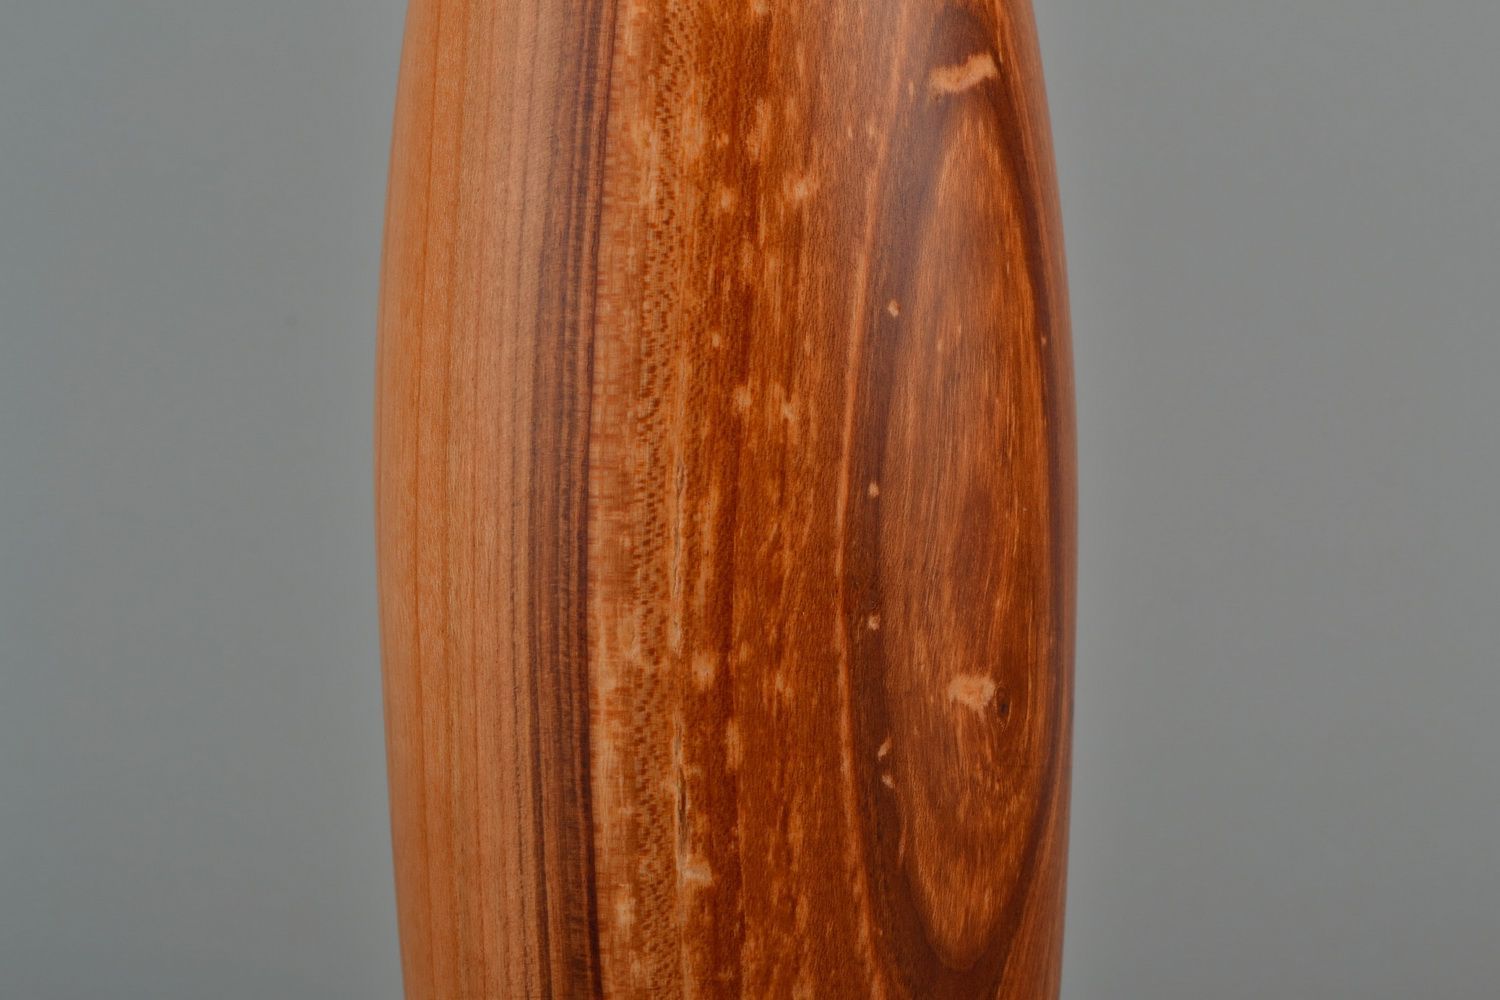 Handmade decorative vase made of wood photo 2